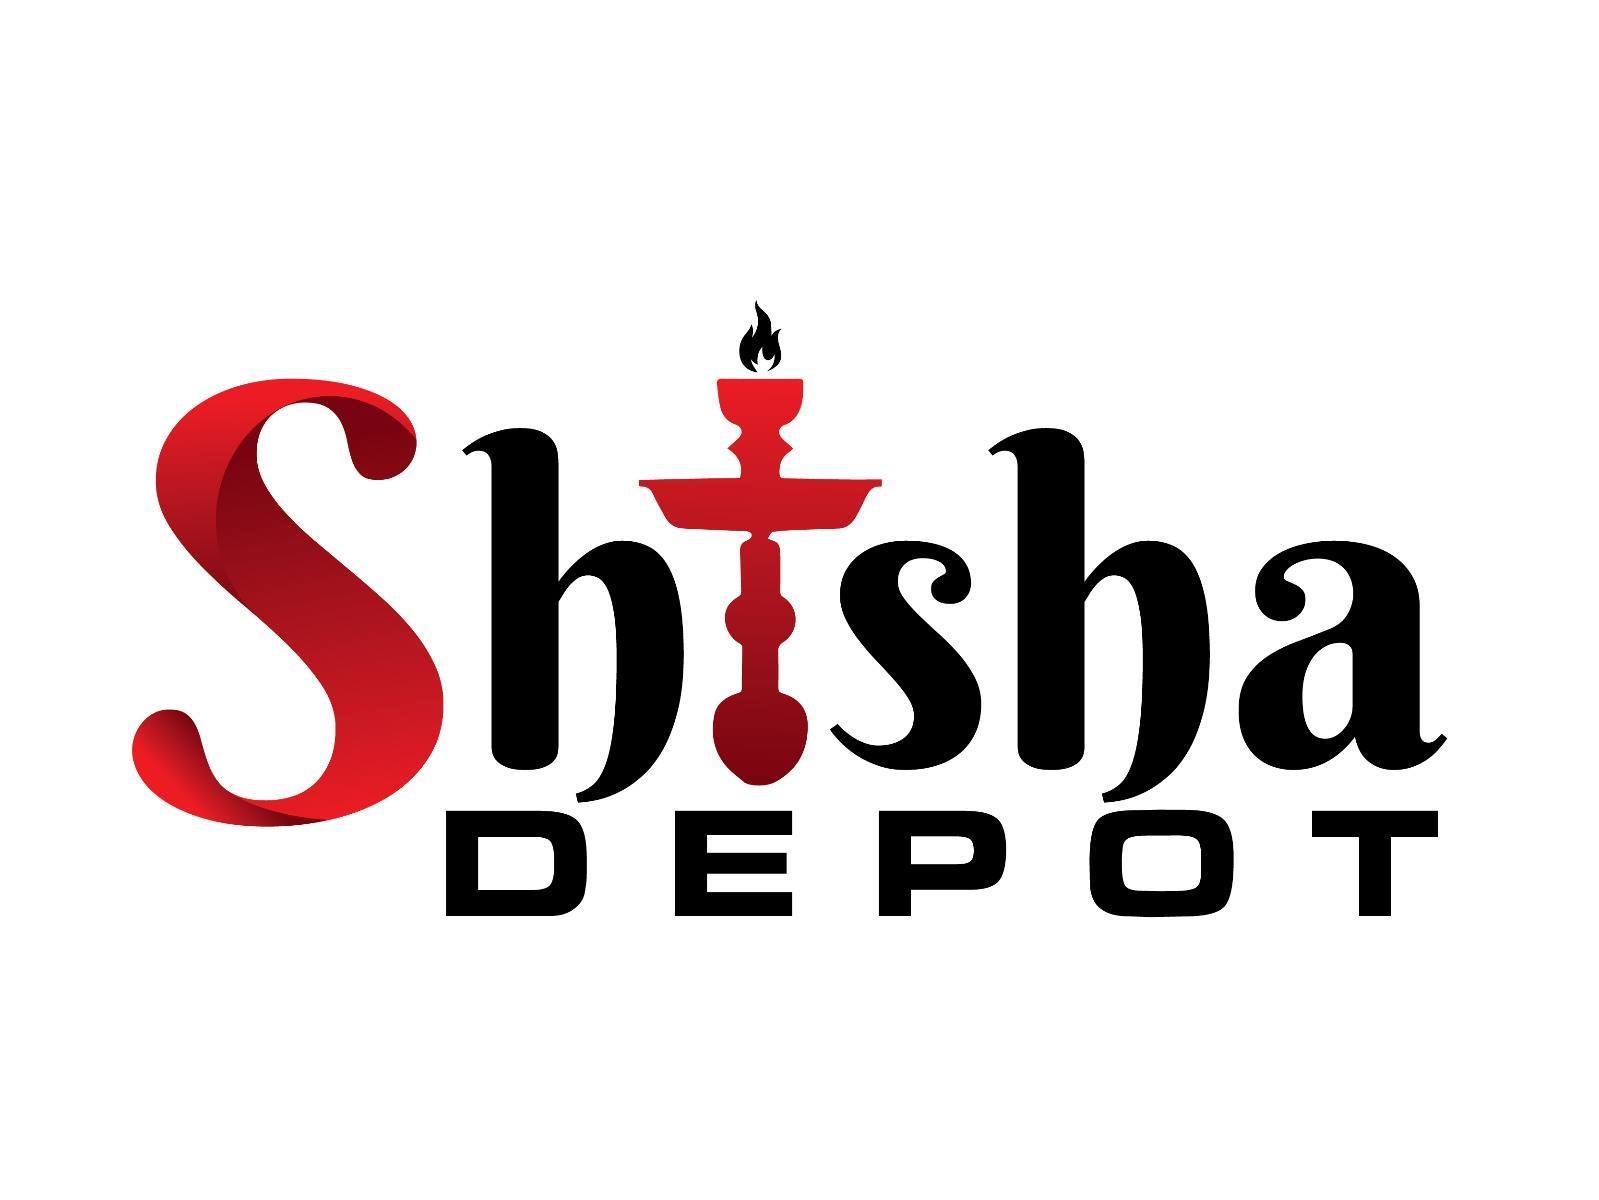 Shisha Depot